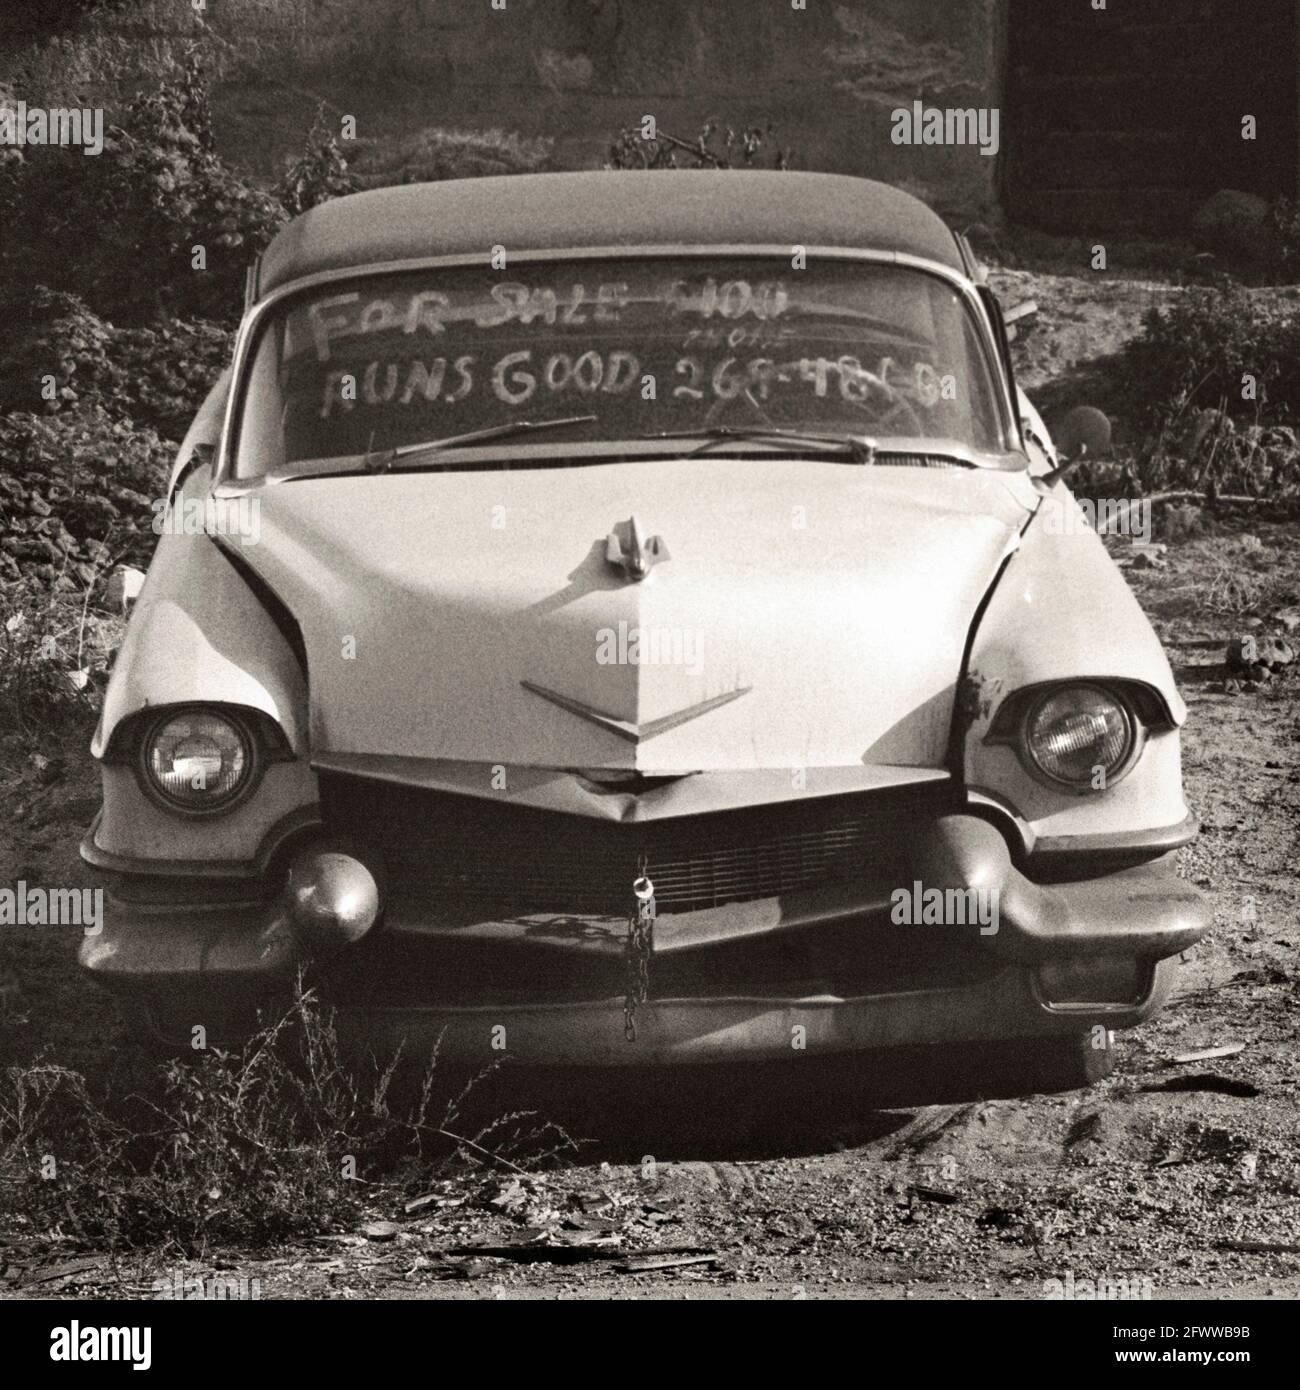 Ein mögliches Cadillac-Automobil aus dem Jahr 1956; mit „Runs Good“ auf der Windschutzscheibe. Beachten Sie die Kette, mit der die Haube befestigt ist. Stockfoto